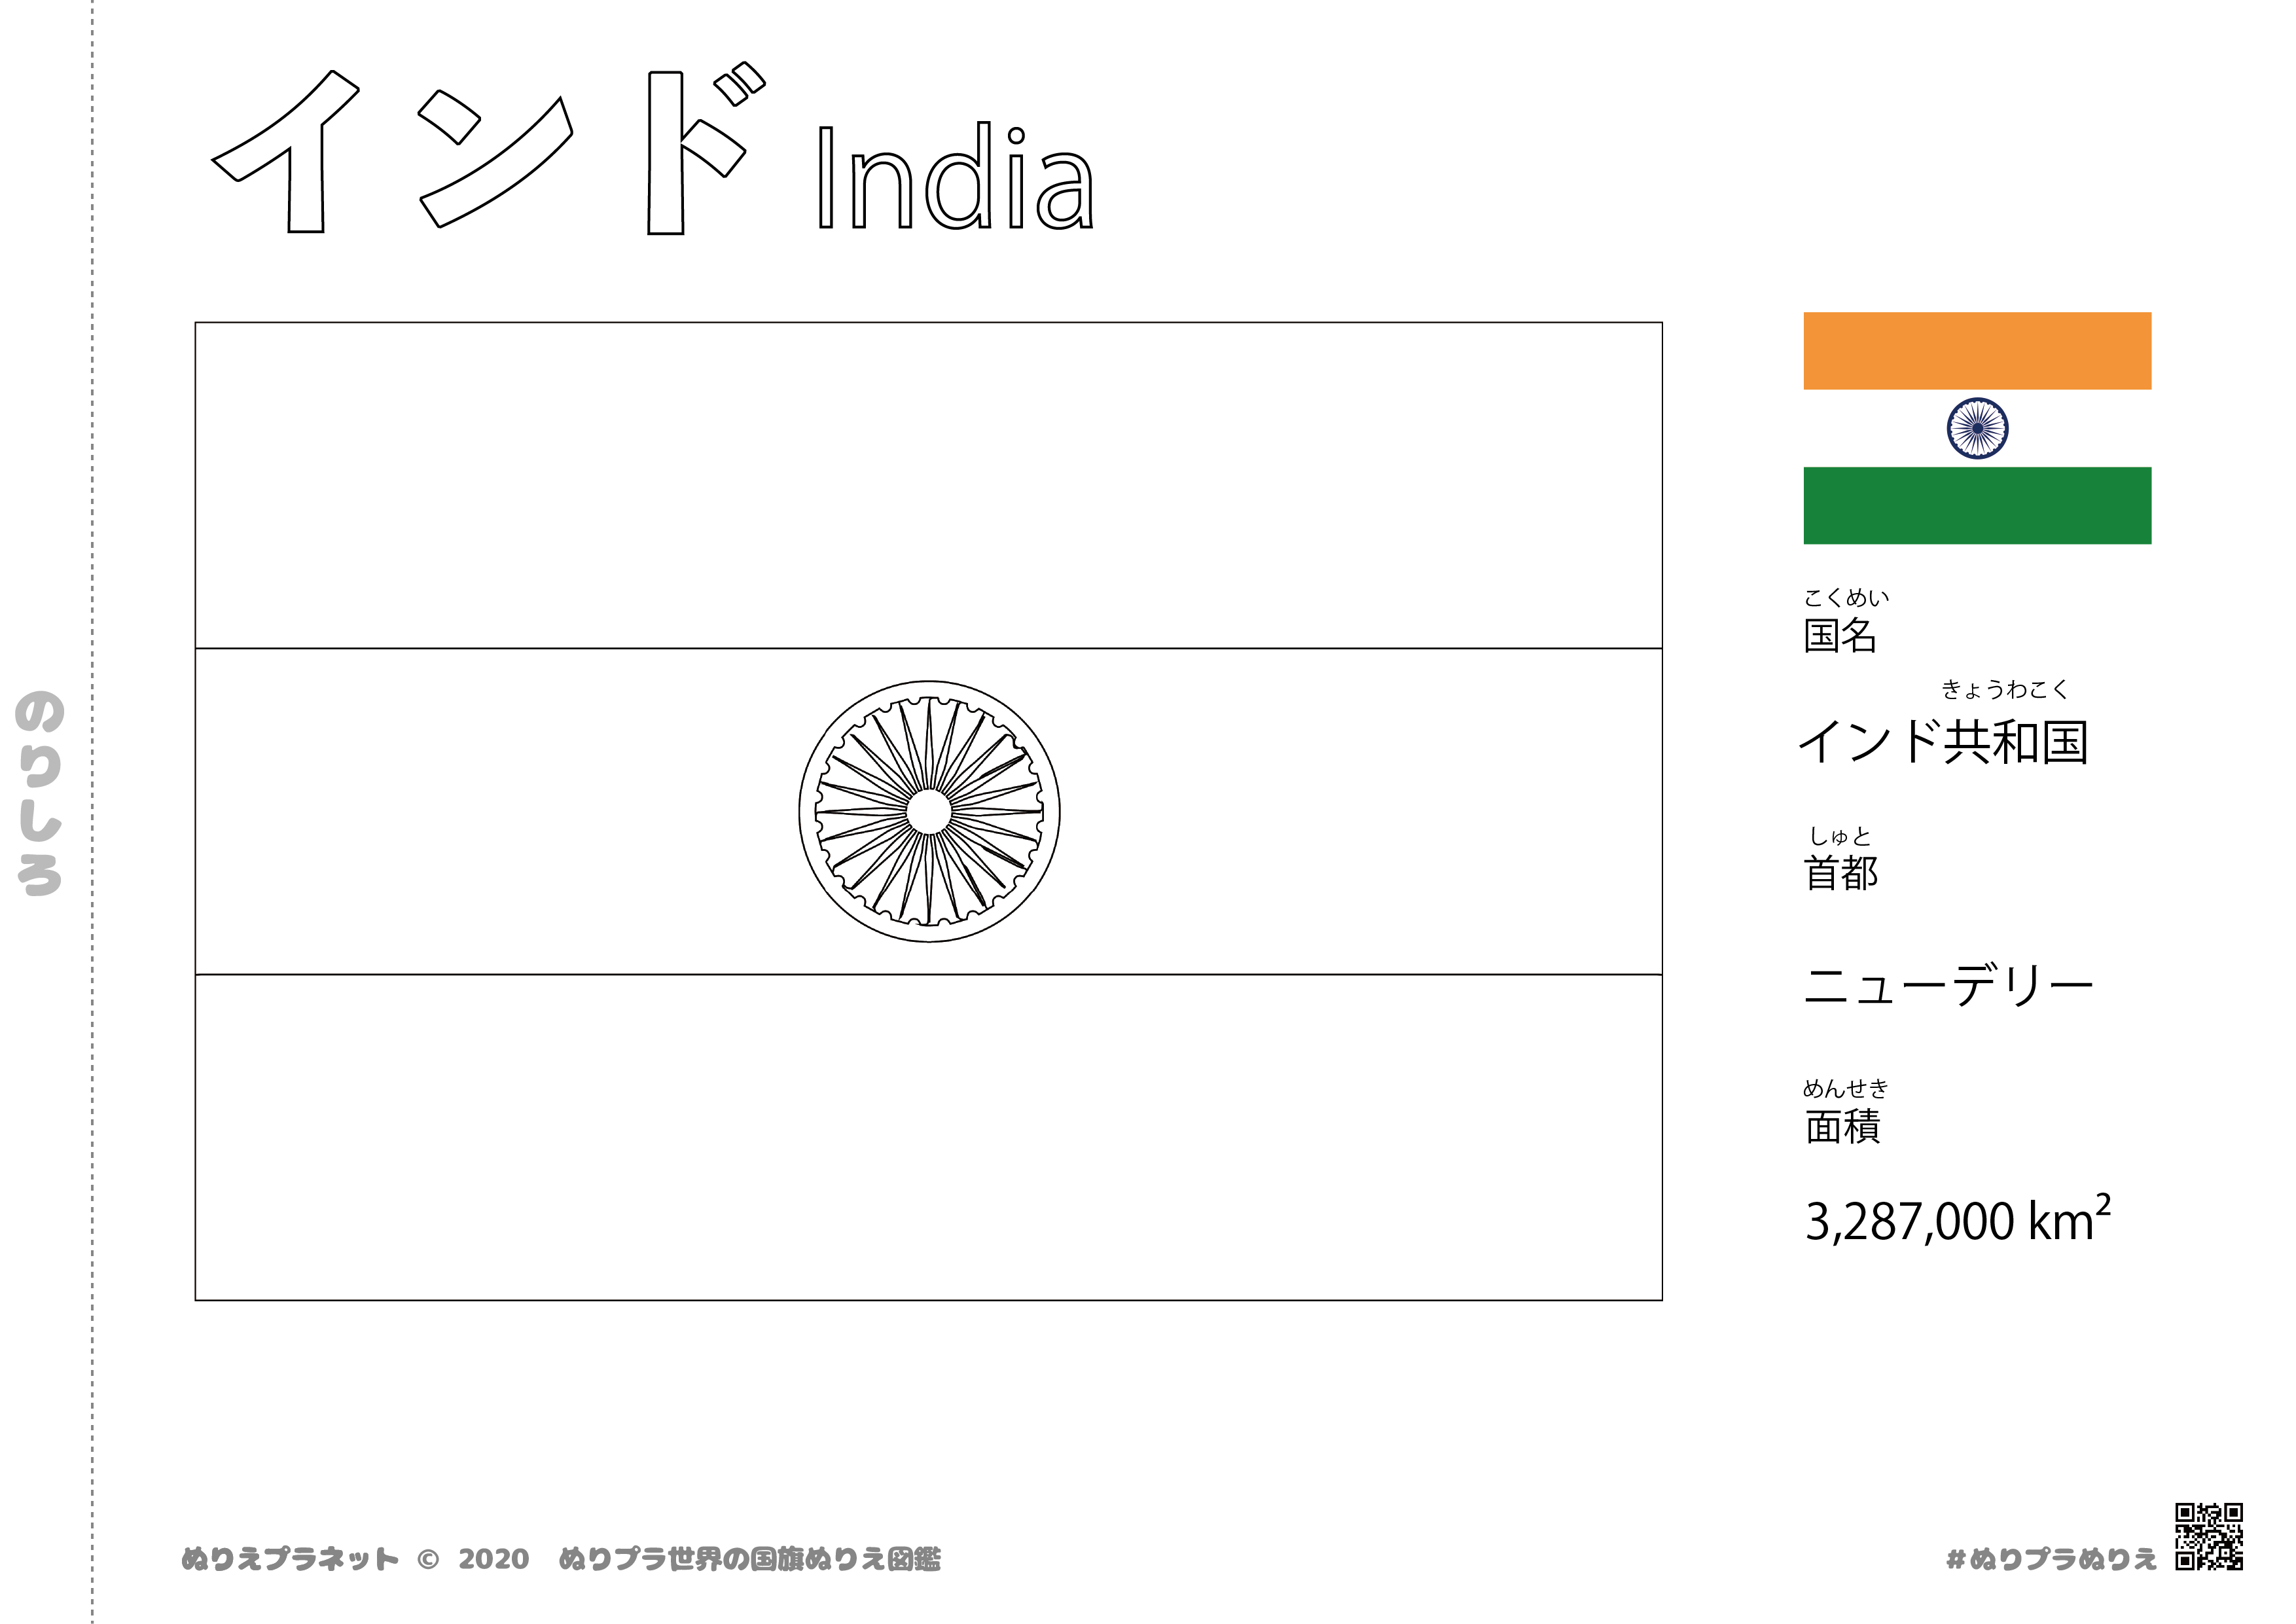 インドの国旗塗り絵です。国名、首都、面積も覚えられます。